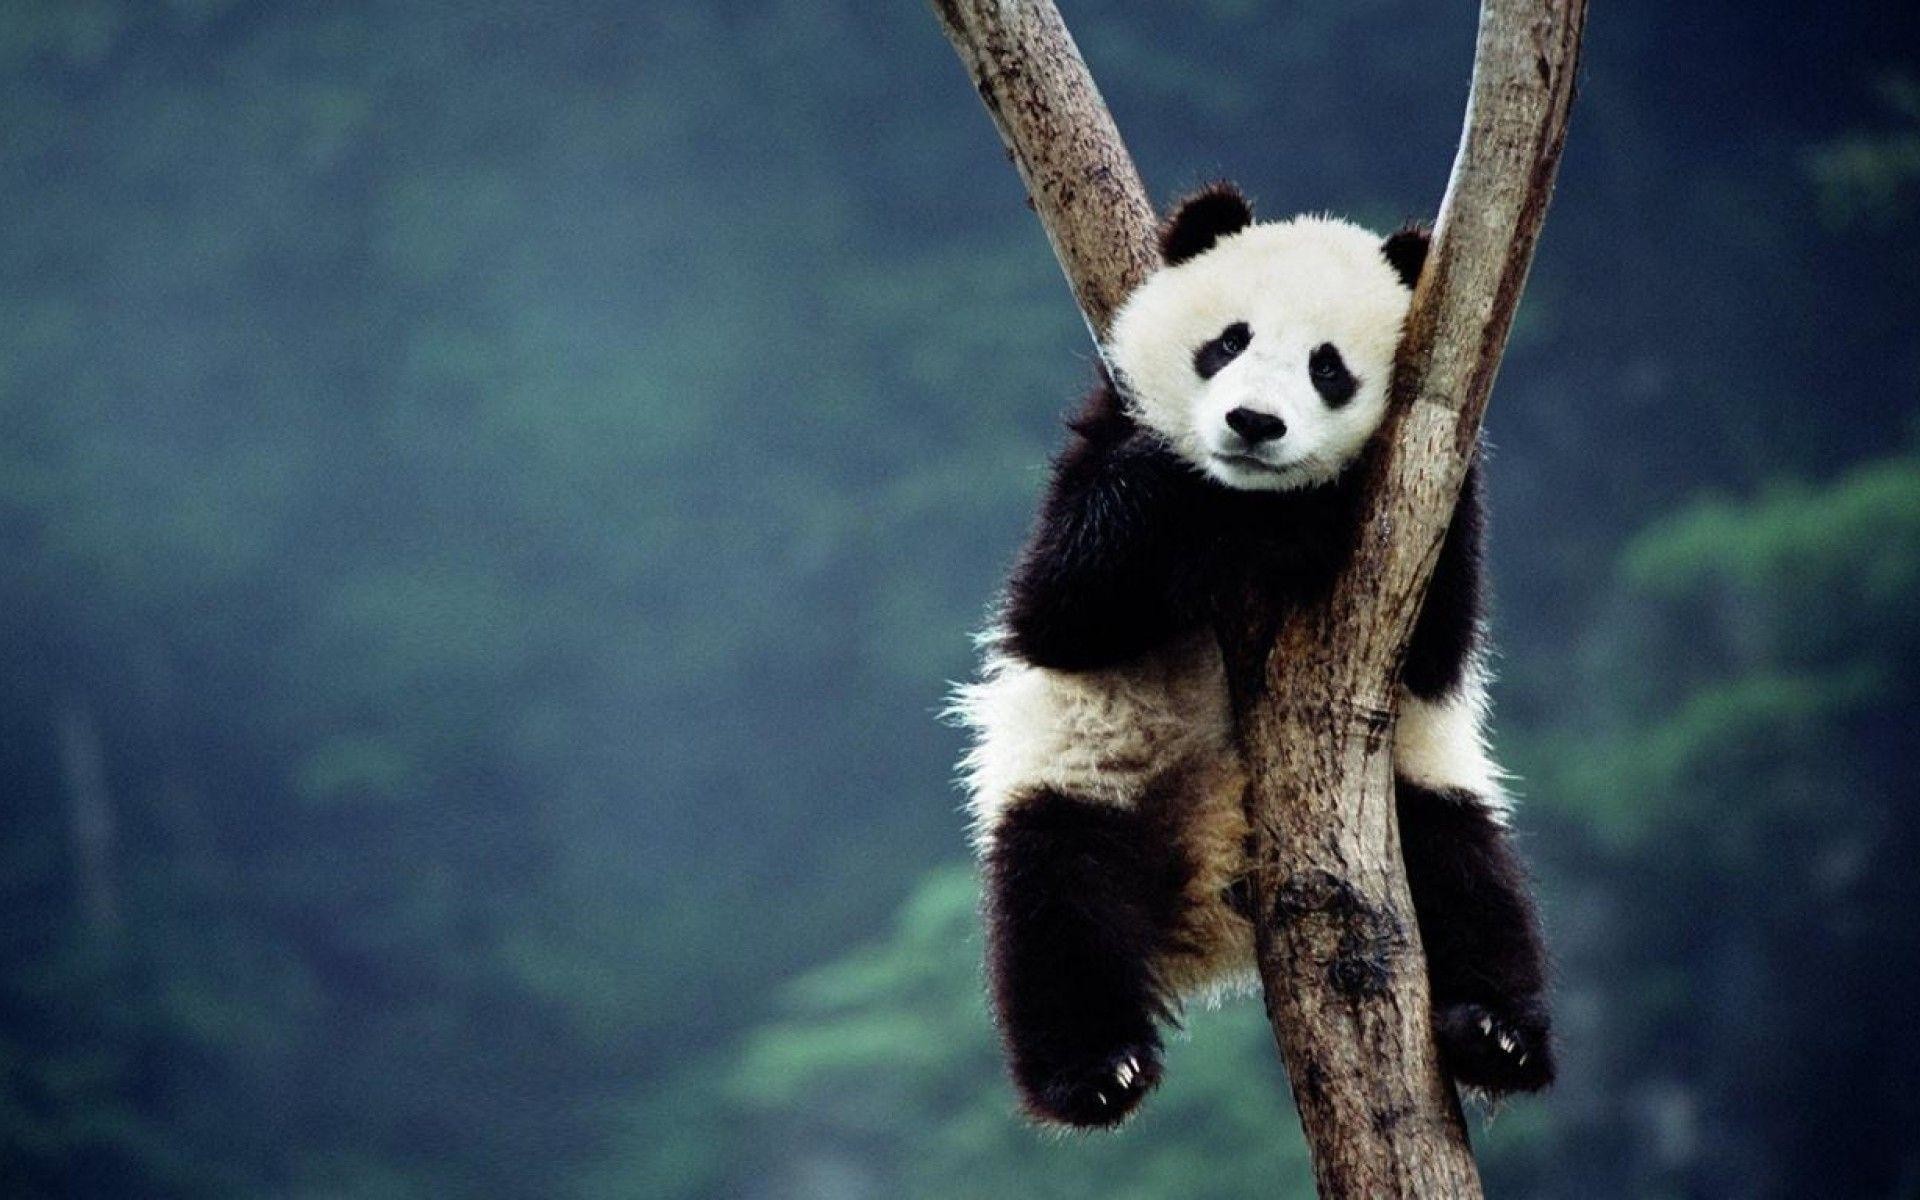 Hình nền gấu trúc panda không chỉ đẹp mắt mà còn mang lại sự may mắn. Theo truyền thuyết, gấu trúc panda được xem như linh vật mang lại bình an và tài lộc. Vì vậy, việc sử dụng hình nền này sẽ giúp bạn tràn đầy niềm tin và hy vọng trong cuộc sống.